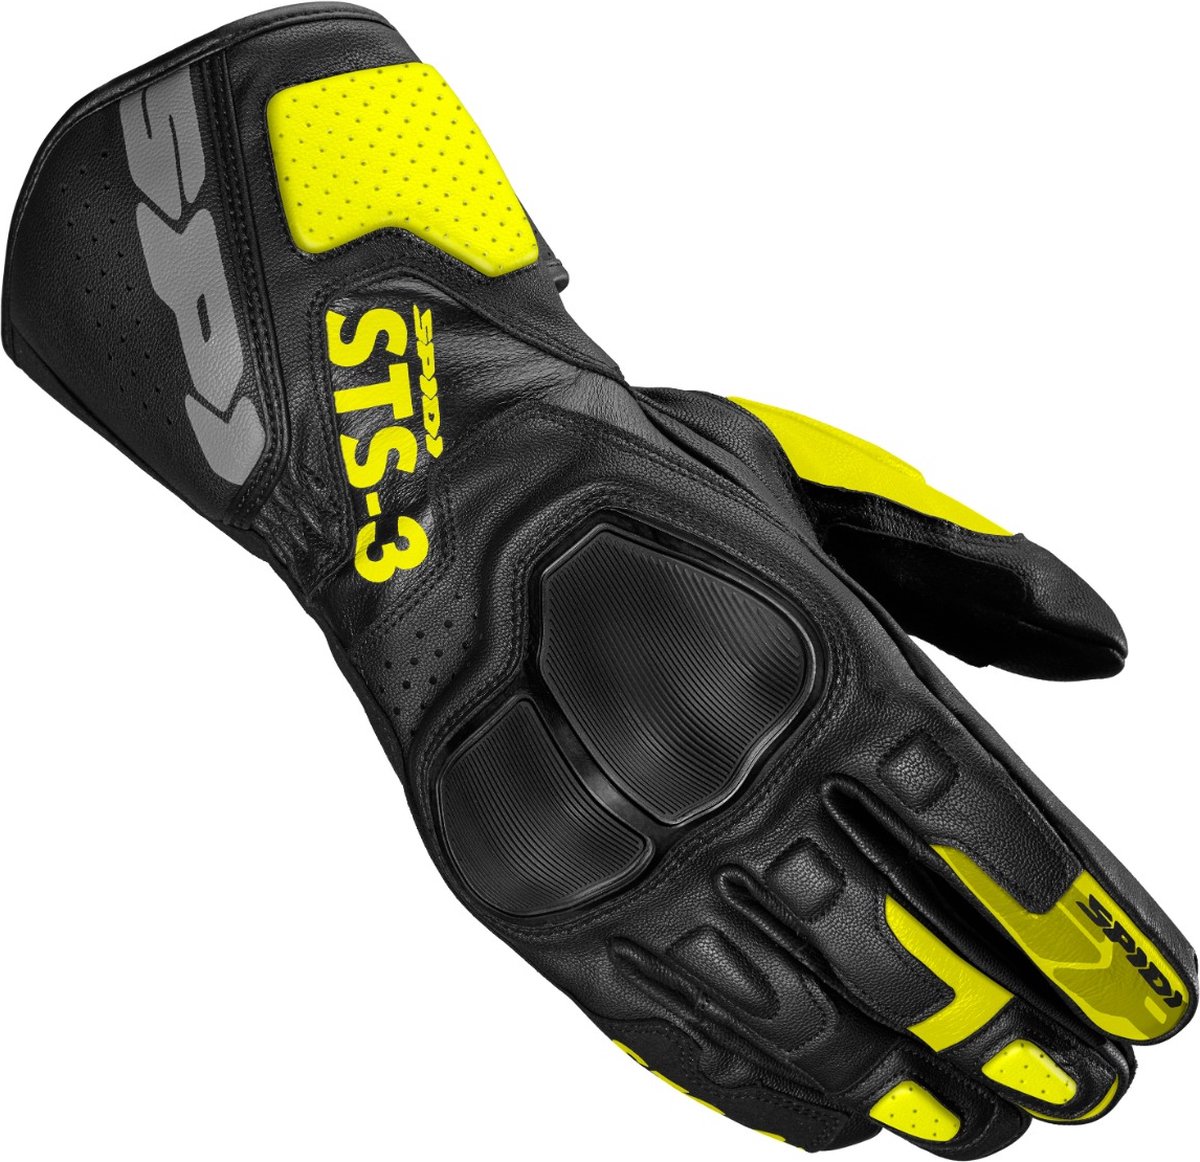 Spidi Sts-3 Black Fluo Yellow Motorcycle Gloves L - Maat L - Handschoen